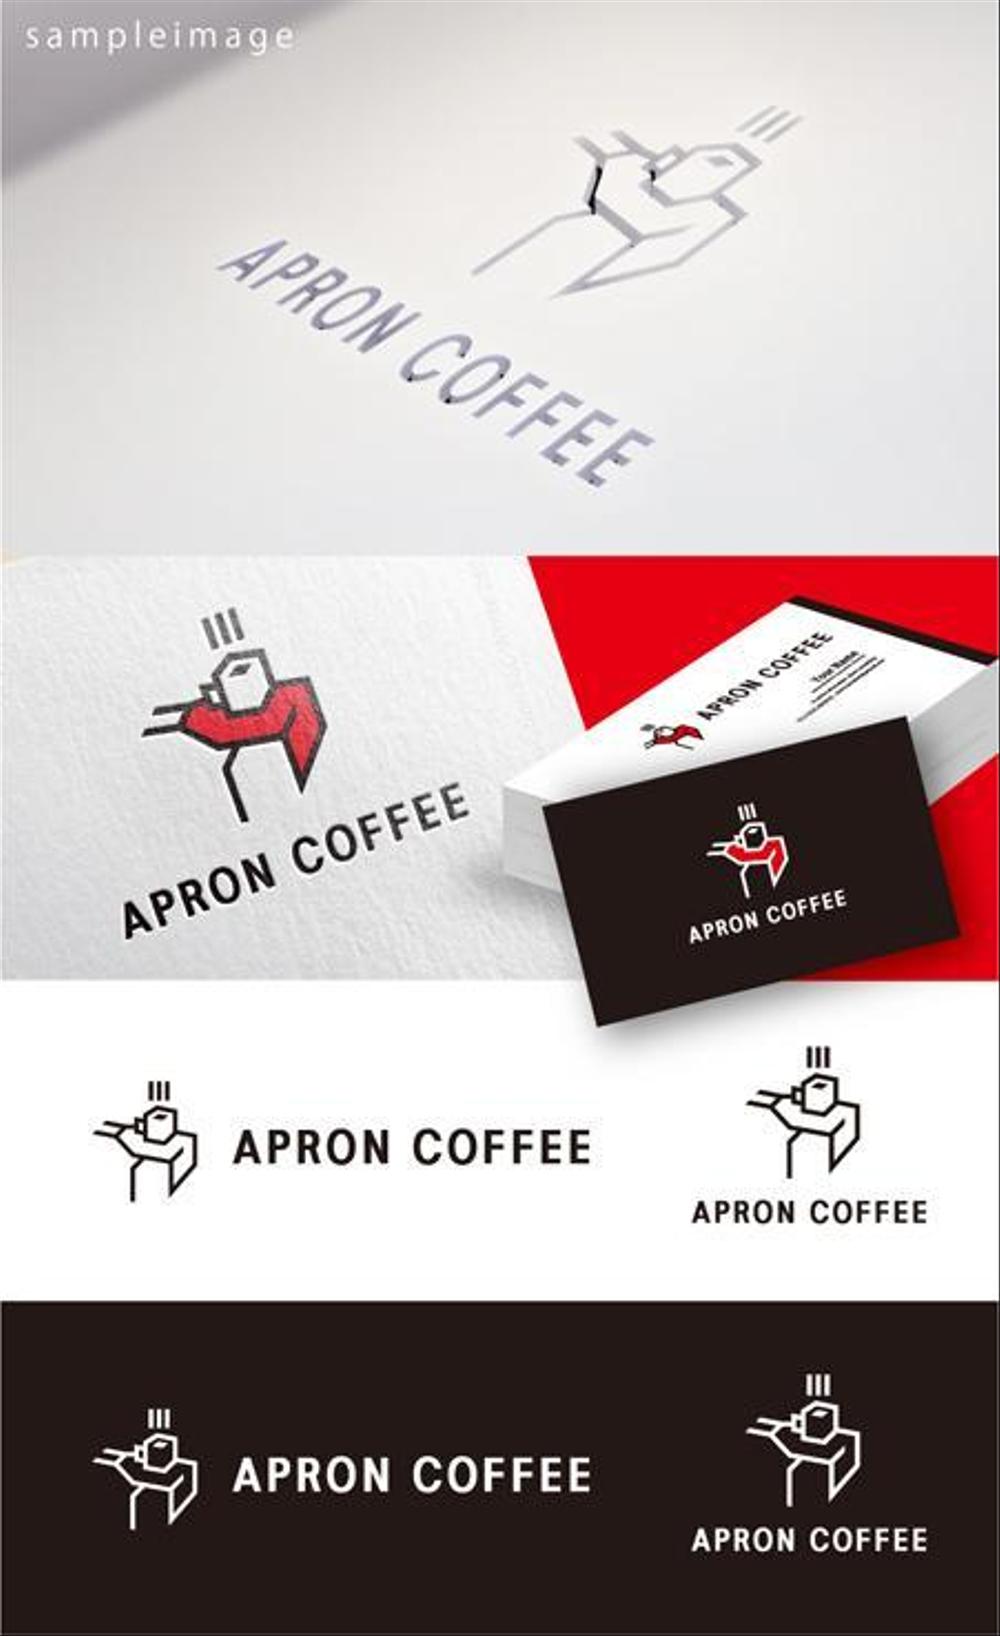 ブランドの商品タグに使用するロゴデザイン